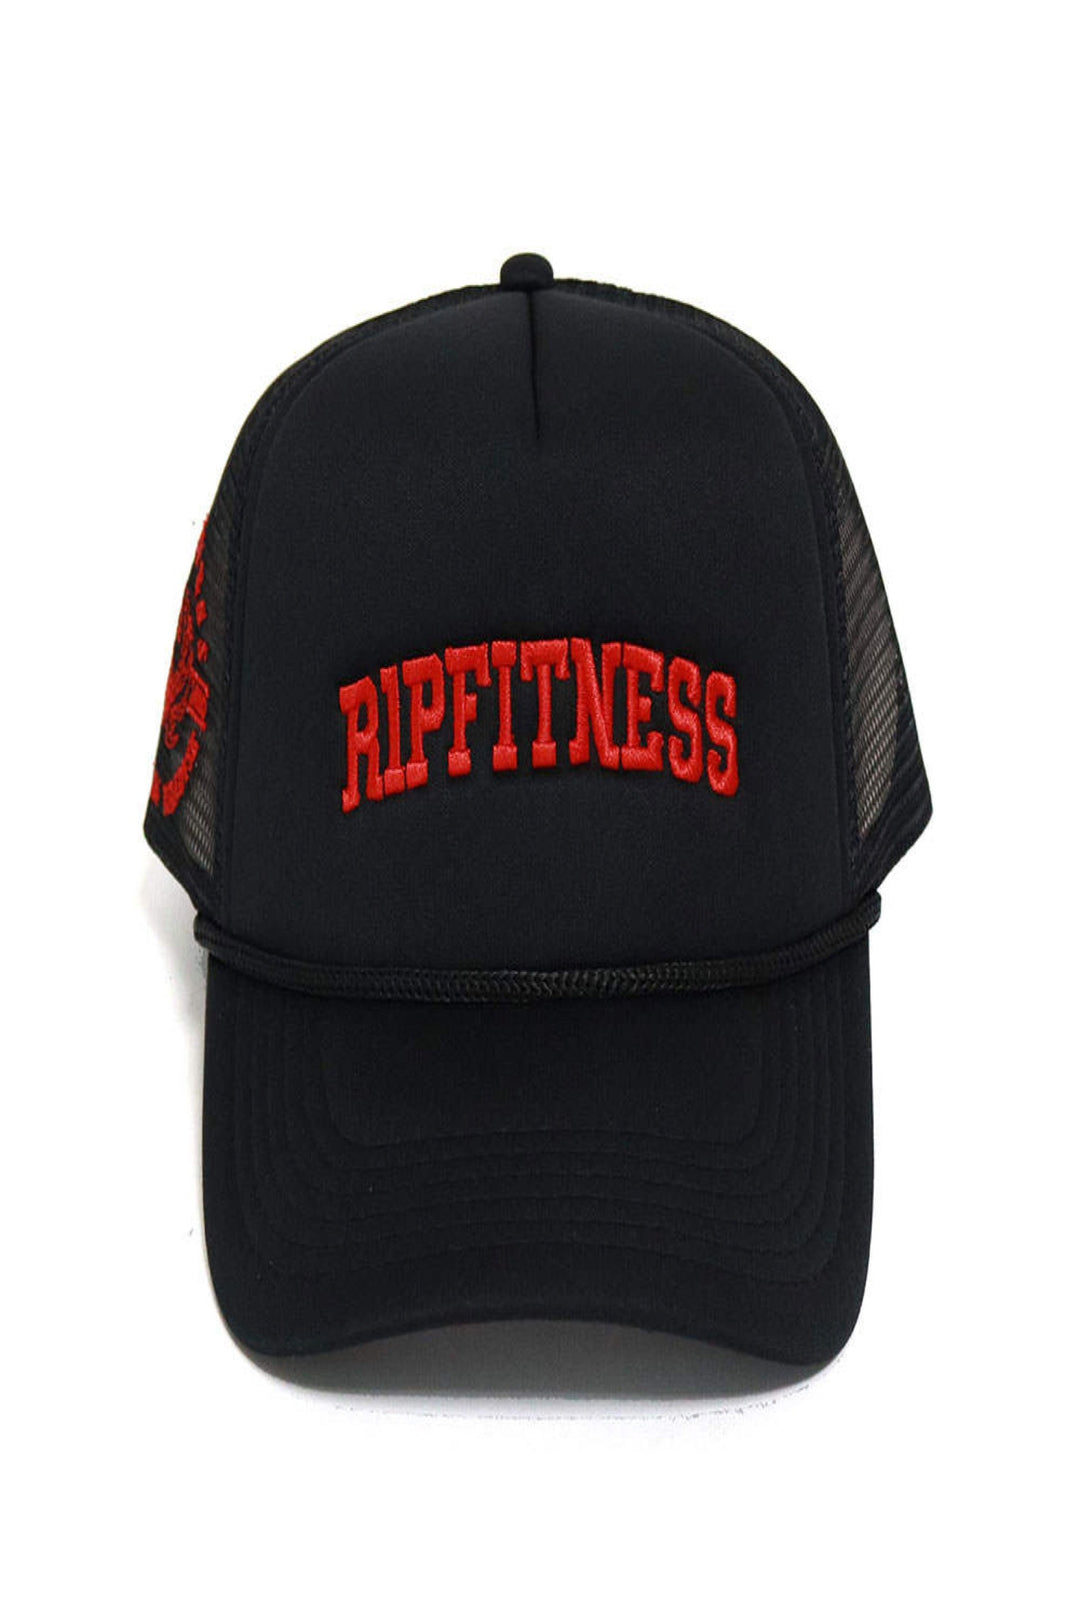 R1PFITNESS Trucker Hat